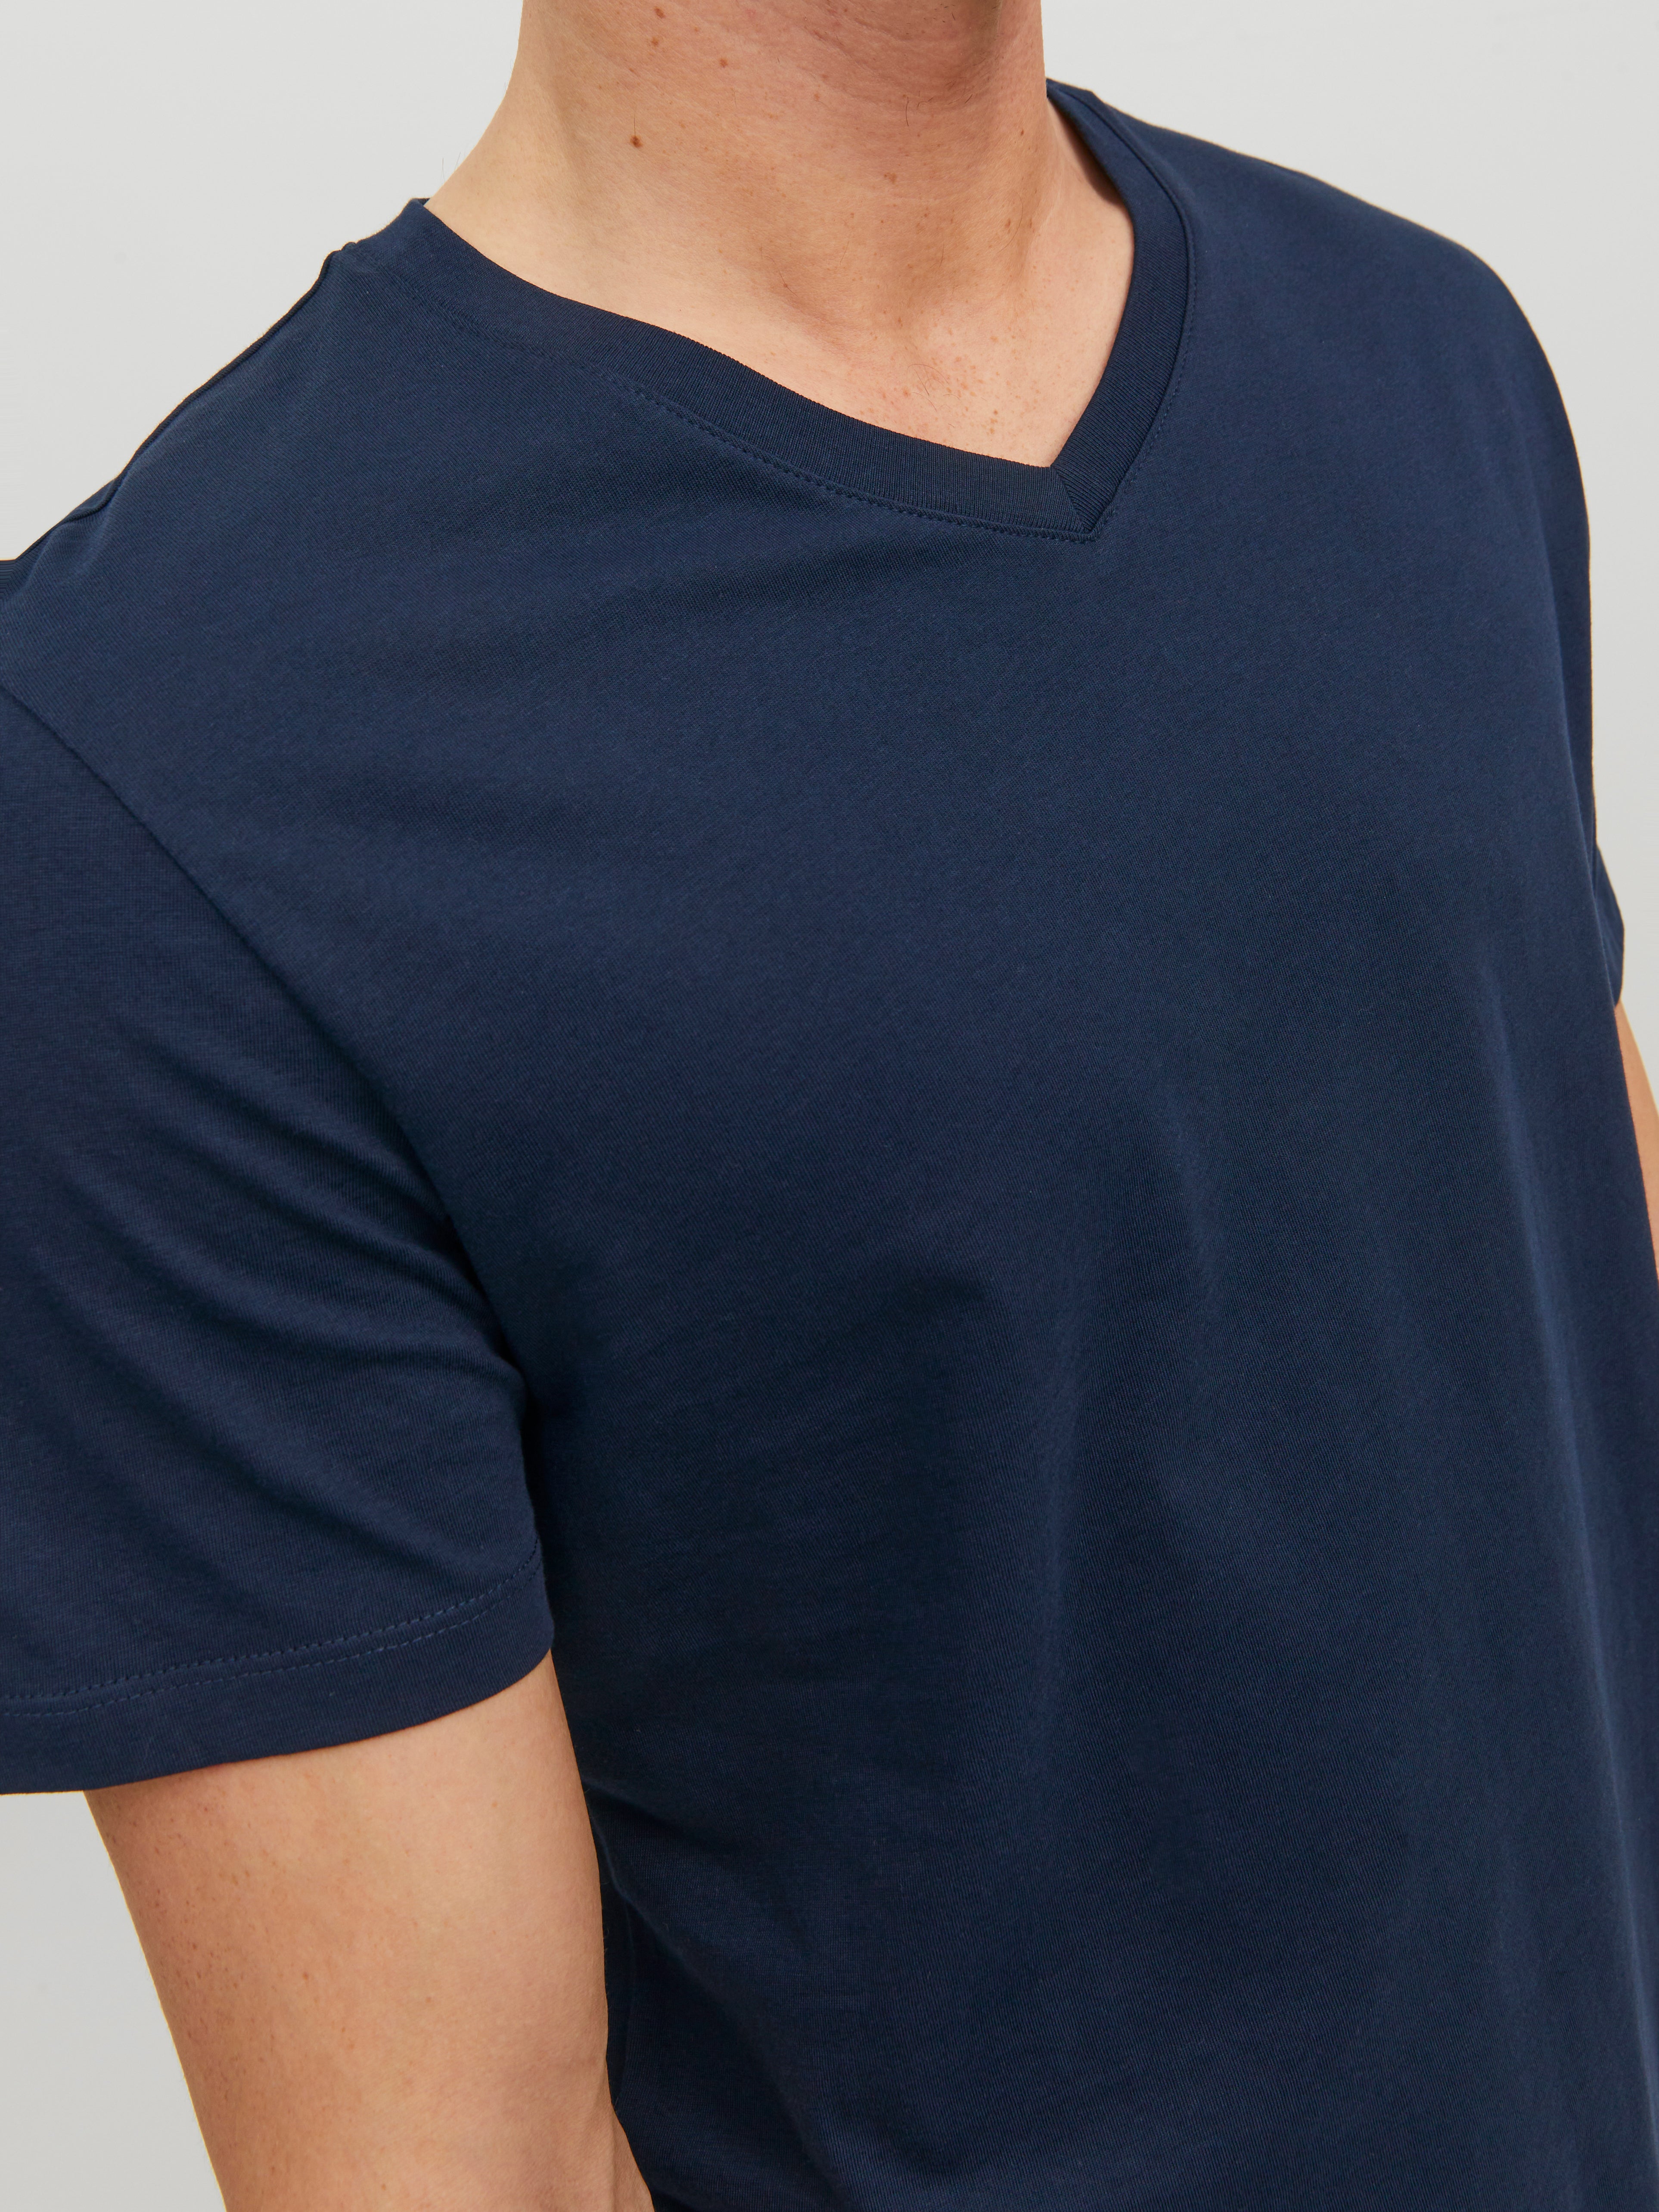 Standard Fit V-Neck T-Shirt | Jack & Jones